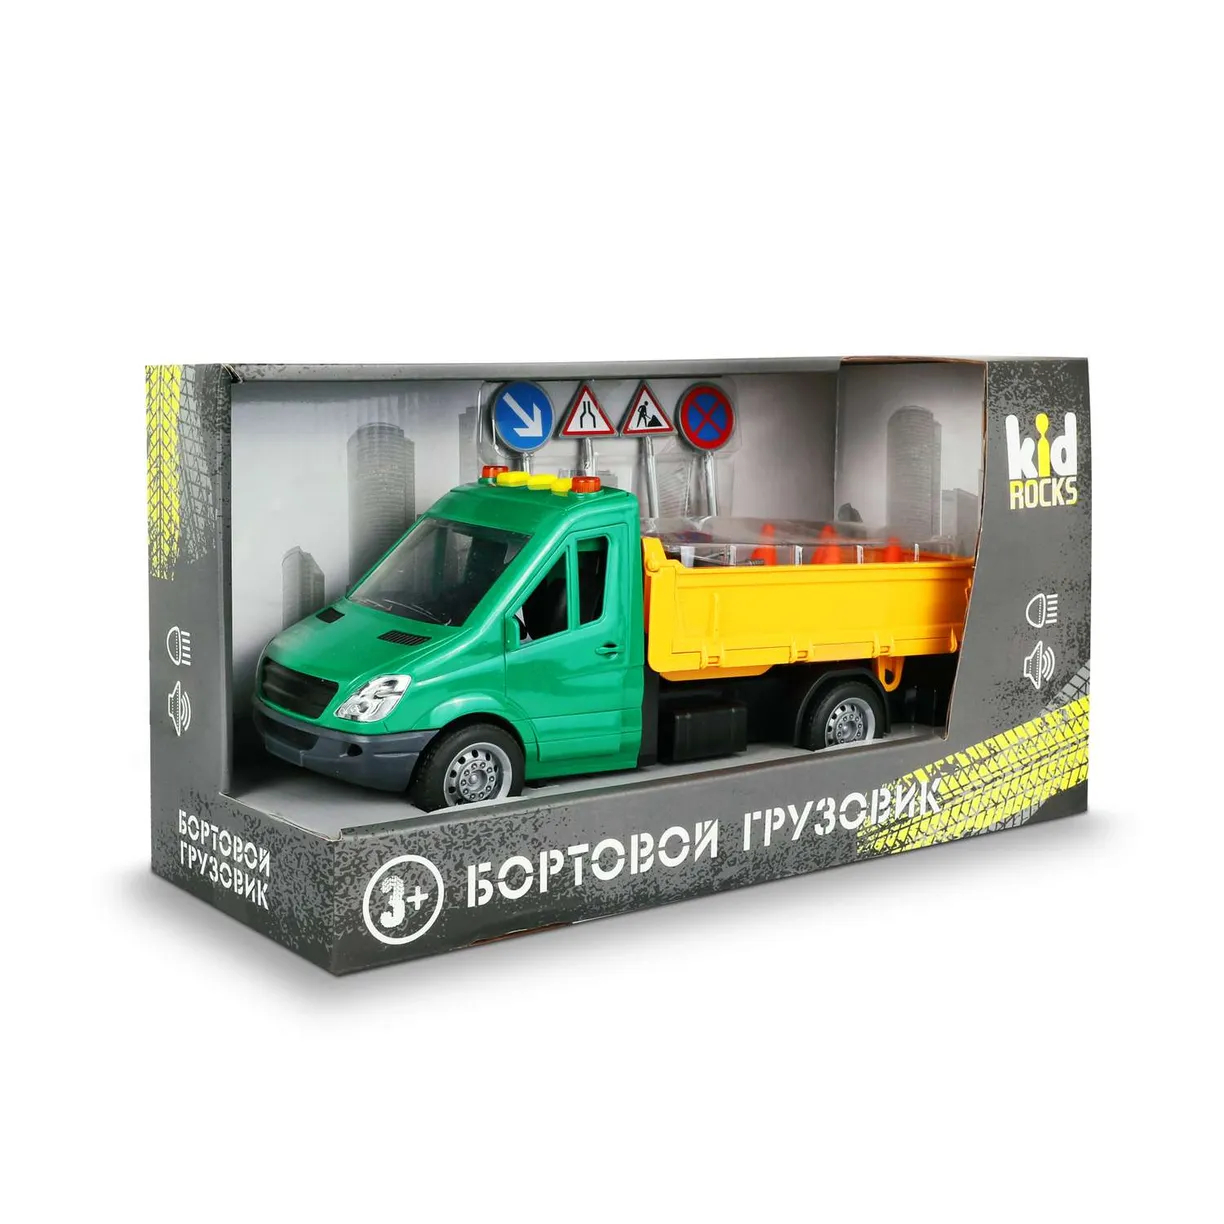 Модель Kid Rocks Бортовой грузовик 1:16 со звуком и светом игрушка надувная со звуком